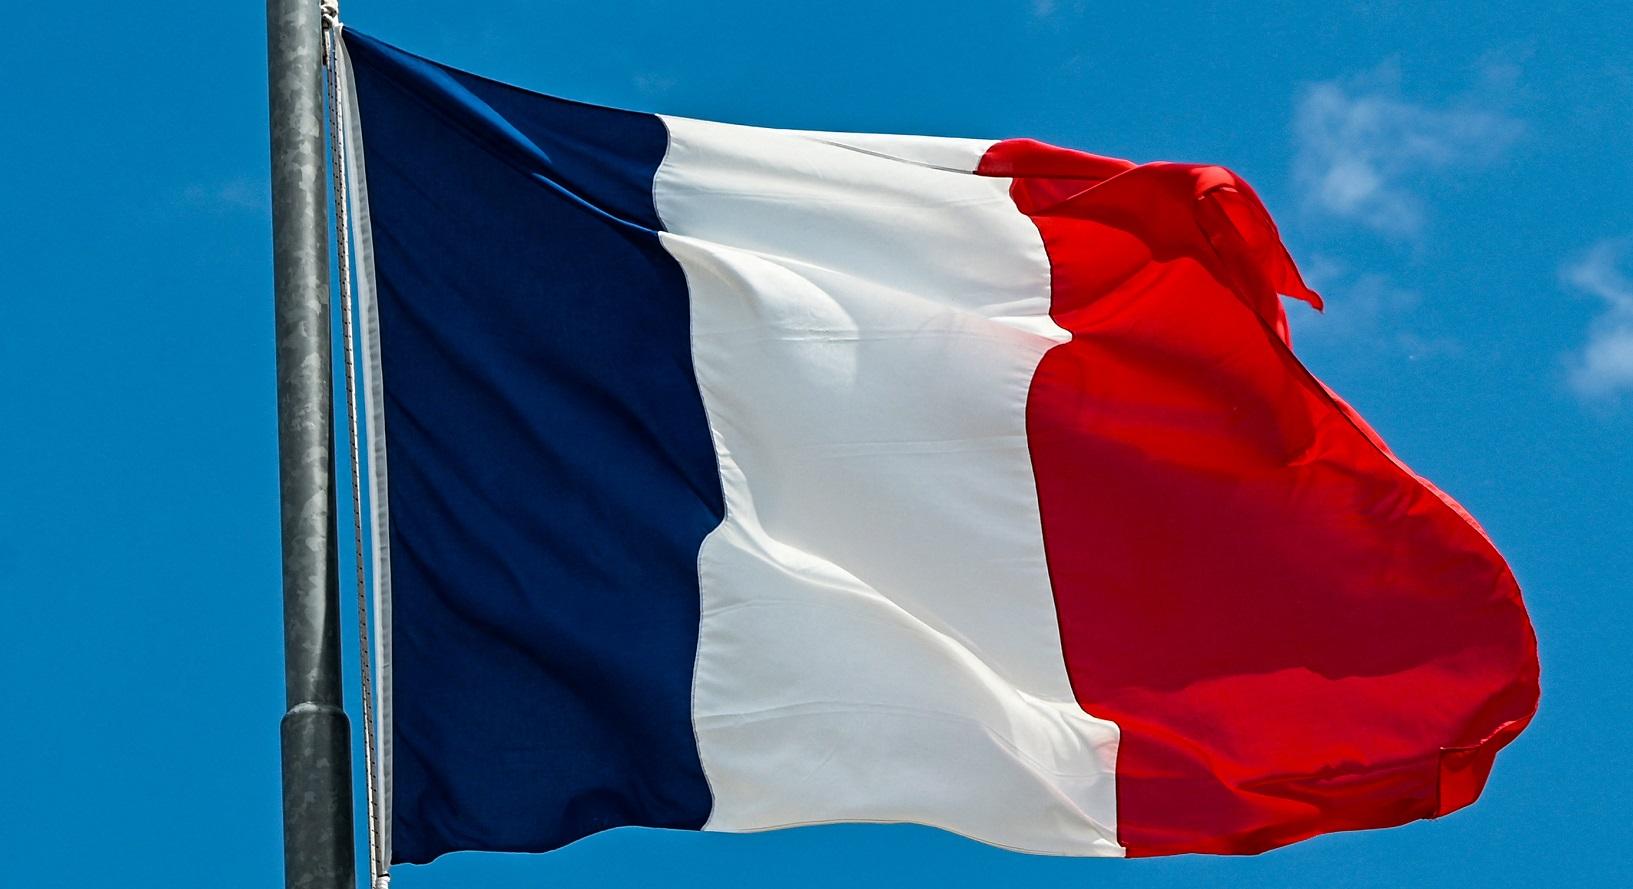 Prancis ditambahkan ke daftar merah efektif 10 Desember 2021 GMA News Online